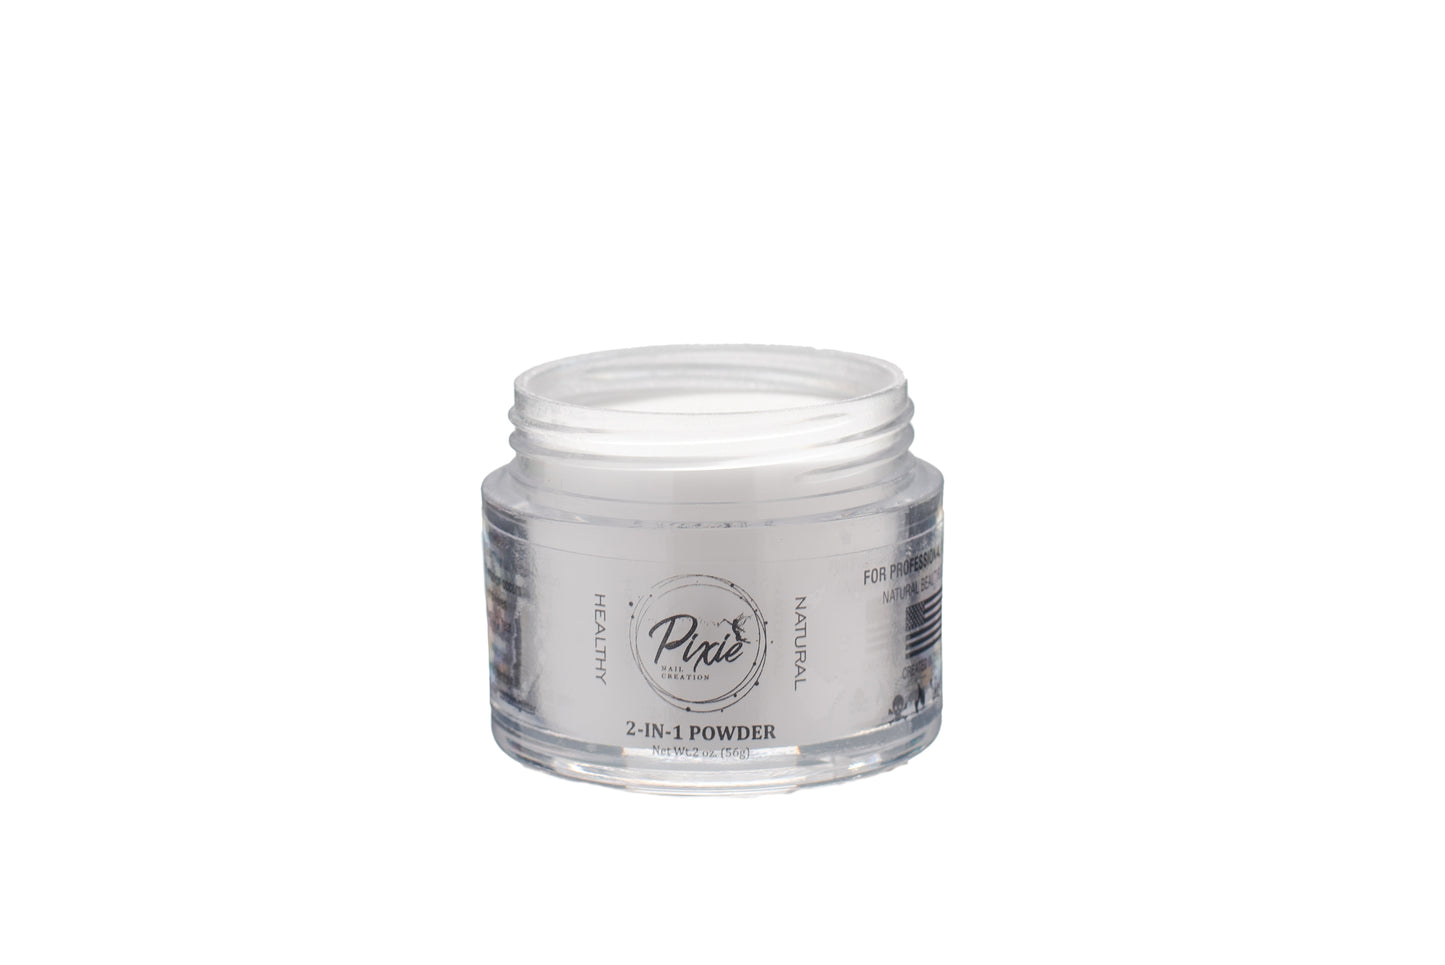 Pixie Soft White Powder  -  2 in 1 Dip & Acrylic Powder (2oz)